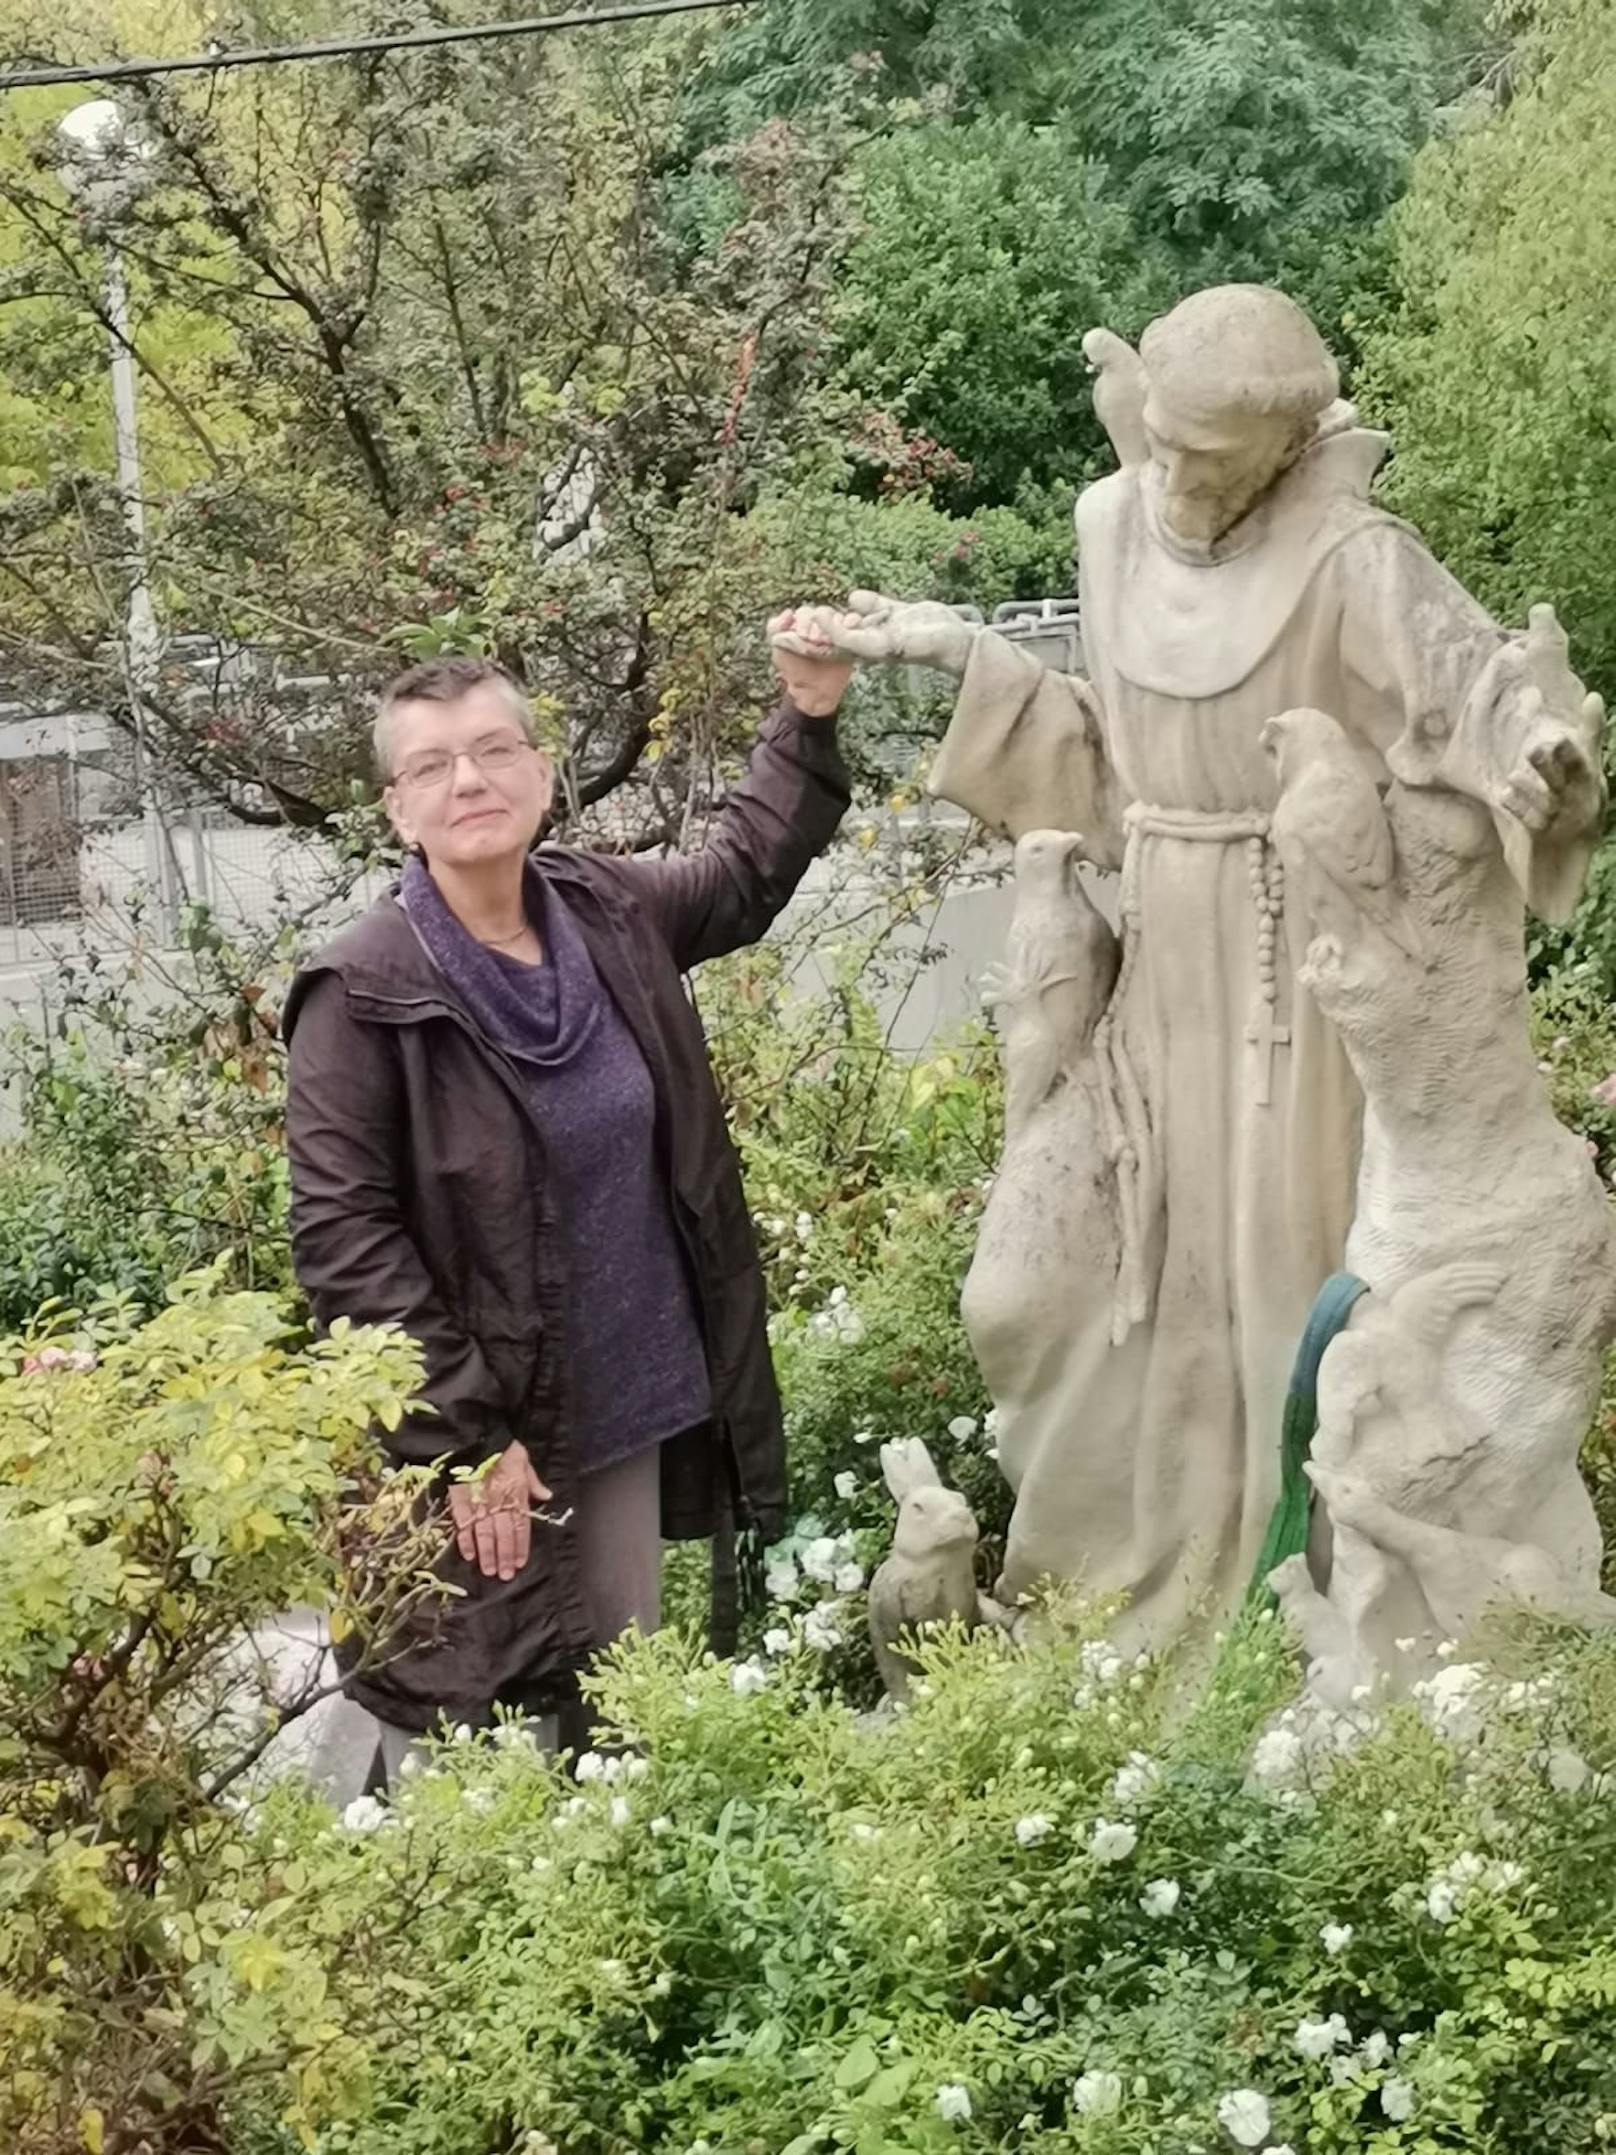 "Kunstwerke gehören zusammen", erklärt TSA-Präsidentin Madeleine Petrovic und gibt den Heiligen an die Stadt Wien zurück. Die MA49 übernahm den Transport, nach der Restaurierung soll der Heilige im Lainzer Tiergarten ein neues Zuhause finden.